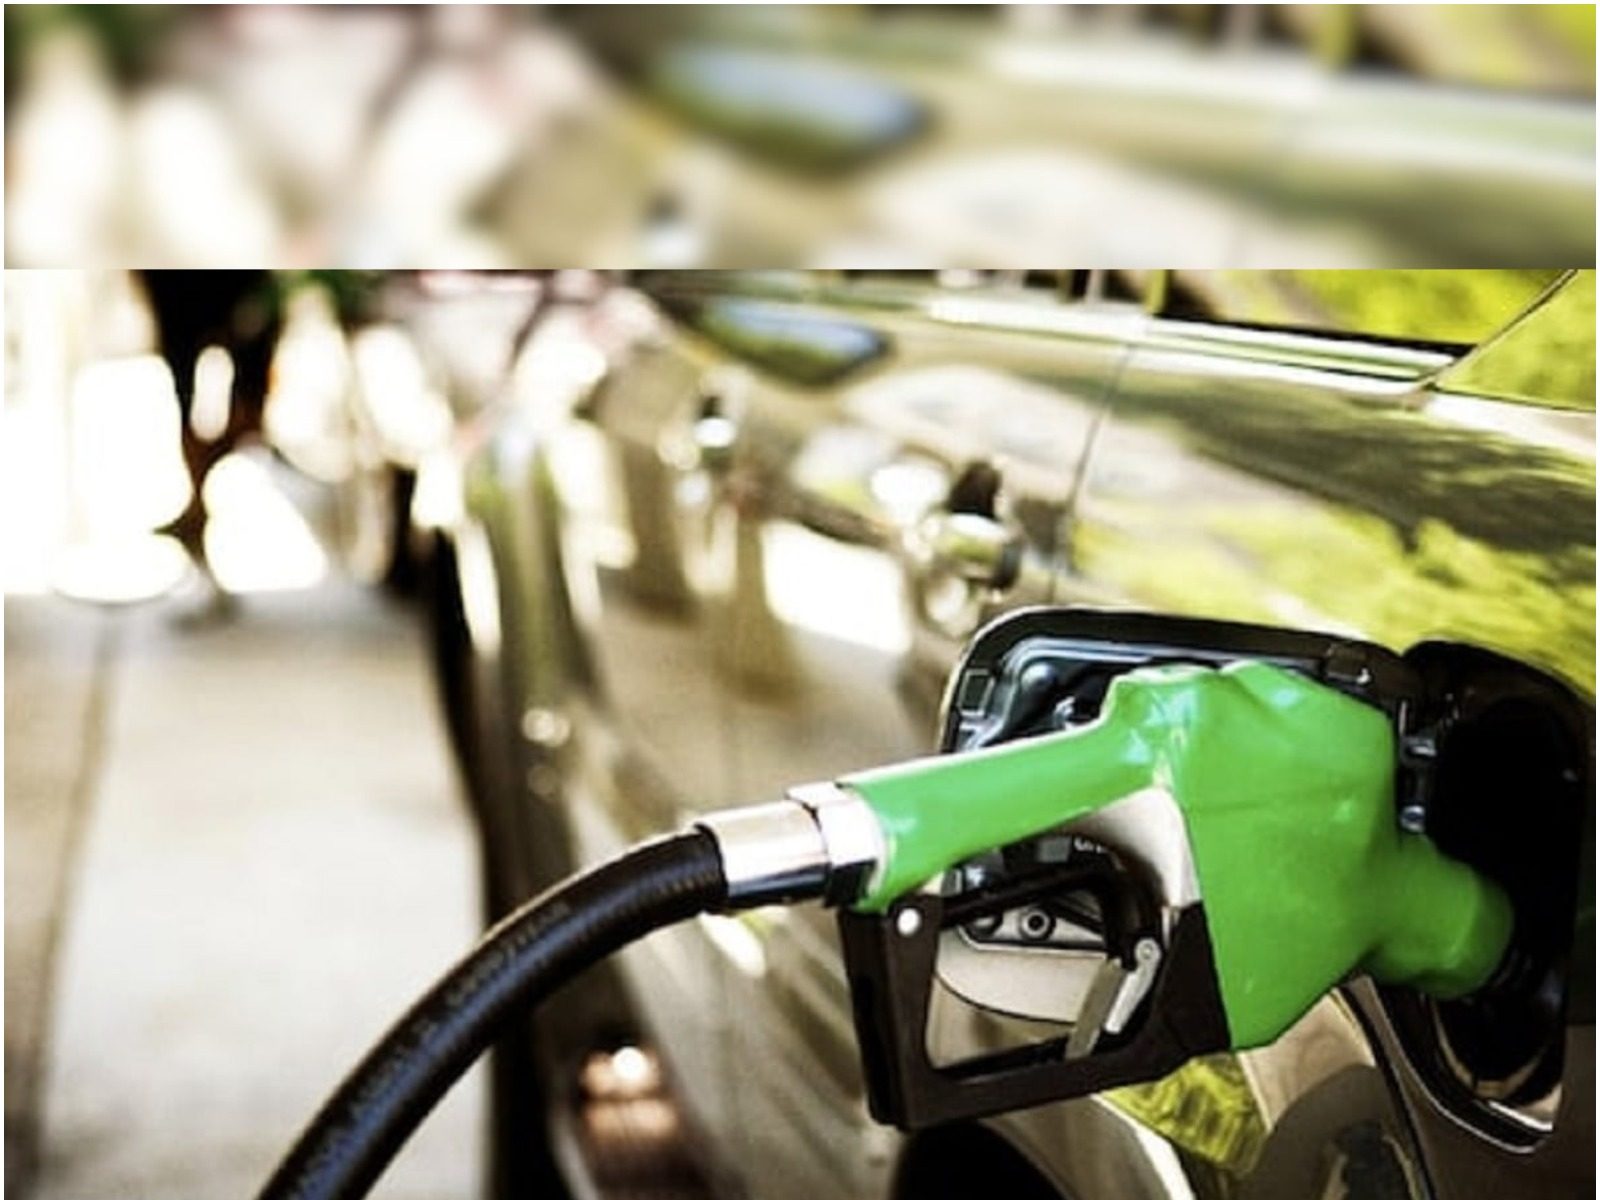  Petrol Diesel Prices Today: 80 ਪੈਸੇ ਦਾ ਝਟਕਾ ਜਾਰੀ, ਜਾਣੋ ਤੁਹਾਡੇ ਸ਼ਹਿਰ 'ਚ ਕਿੰਨਾ ਮਹਿੰਗਾ ਪੈਟਰੋਲ 
